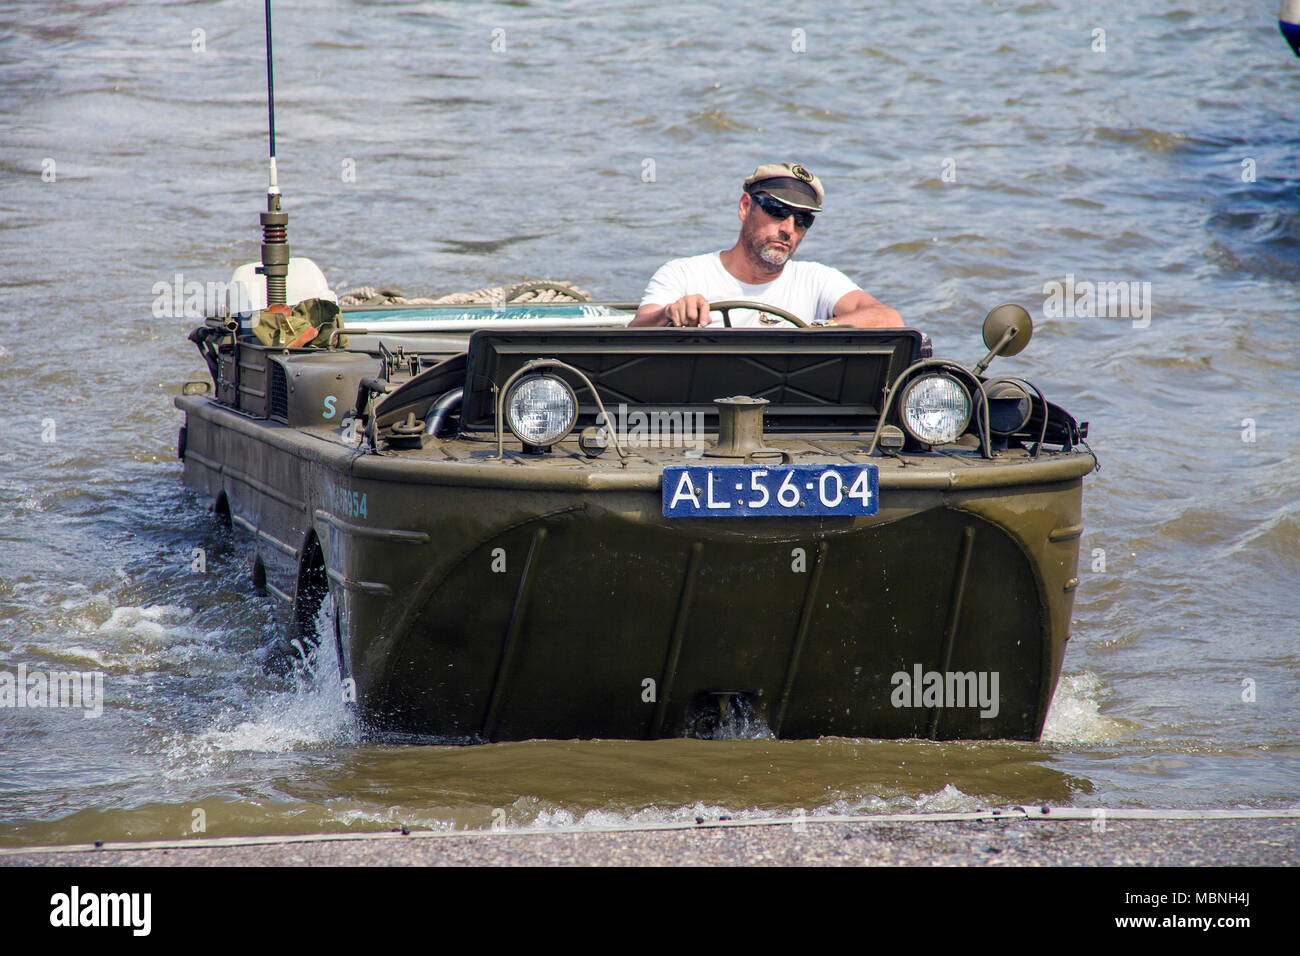 Militärische Amphibienfahrzeug fahren aus Wasser an der Mosel, Cochem, Rheinland-Pfalz, Deutschland Stockfoto